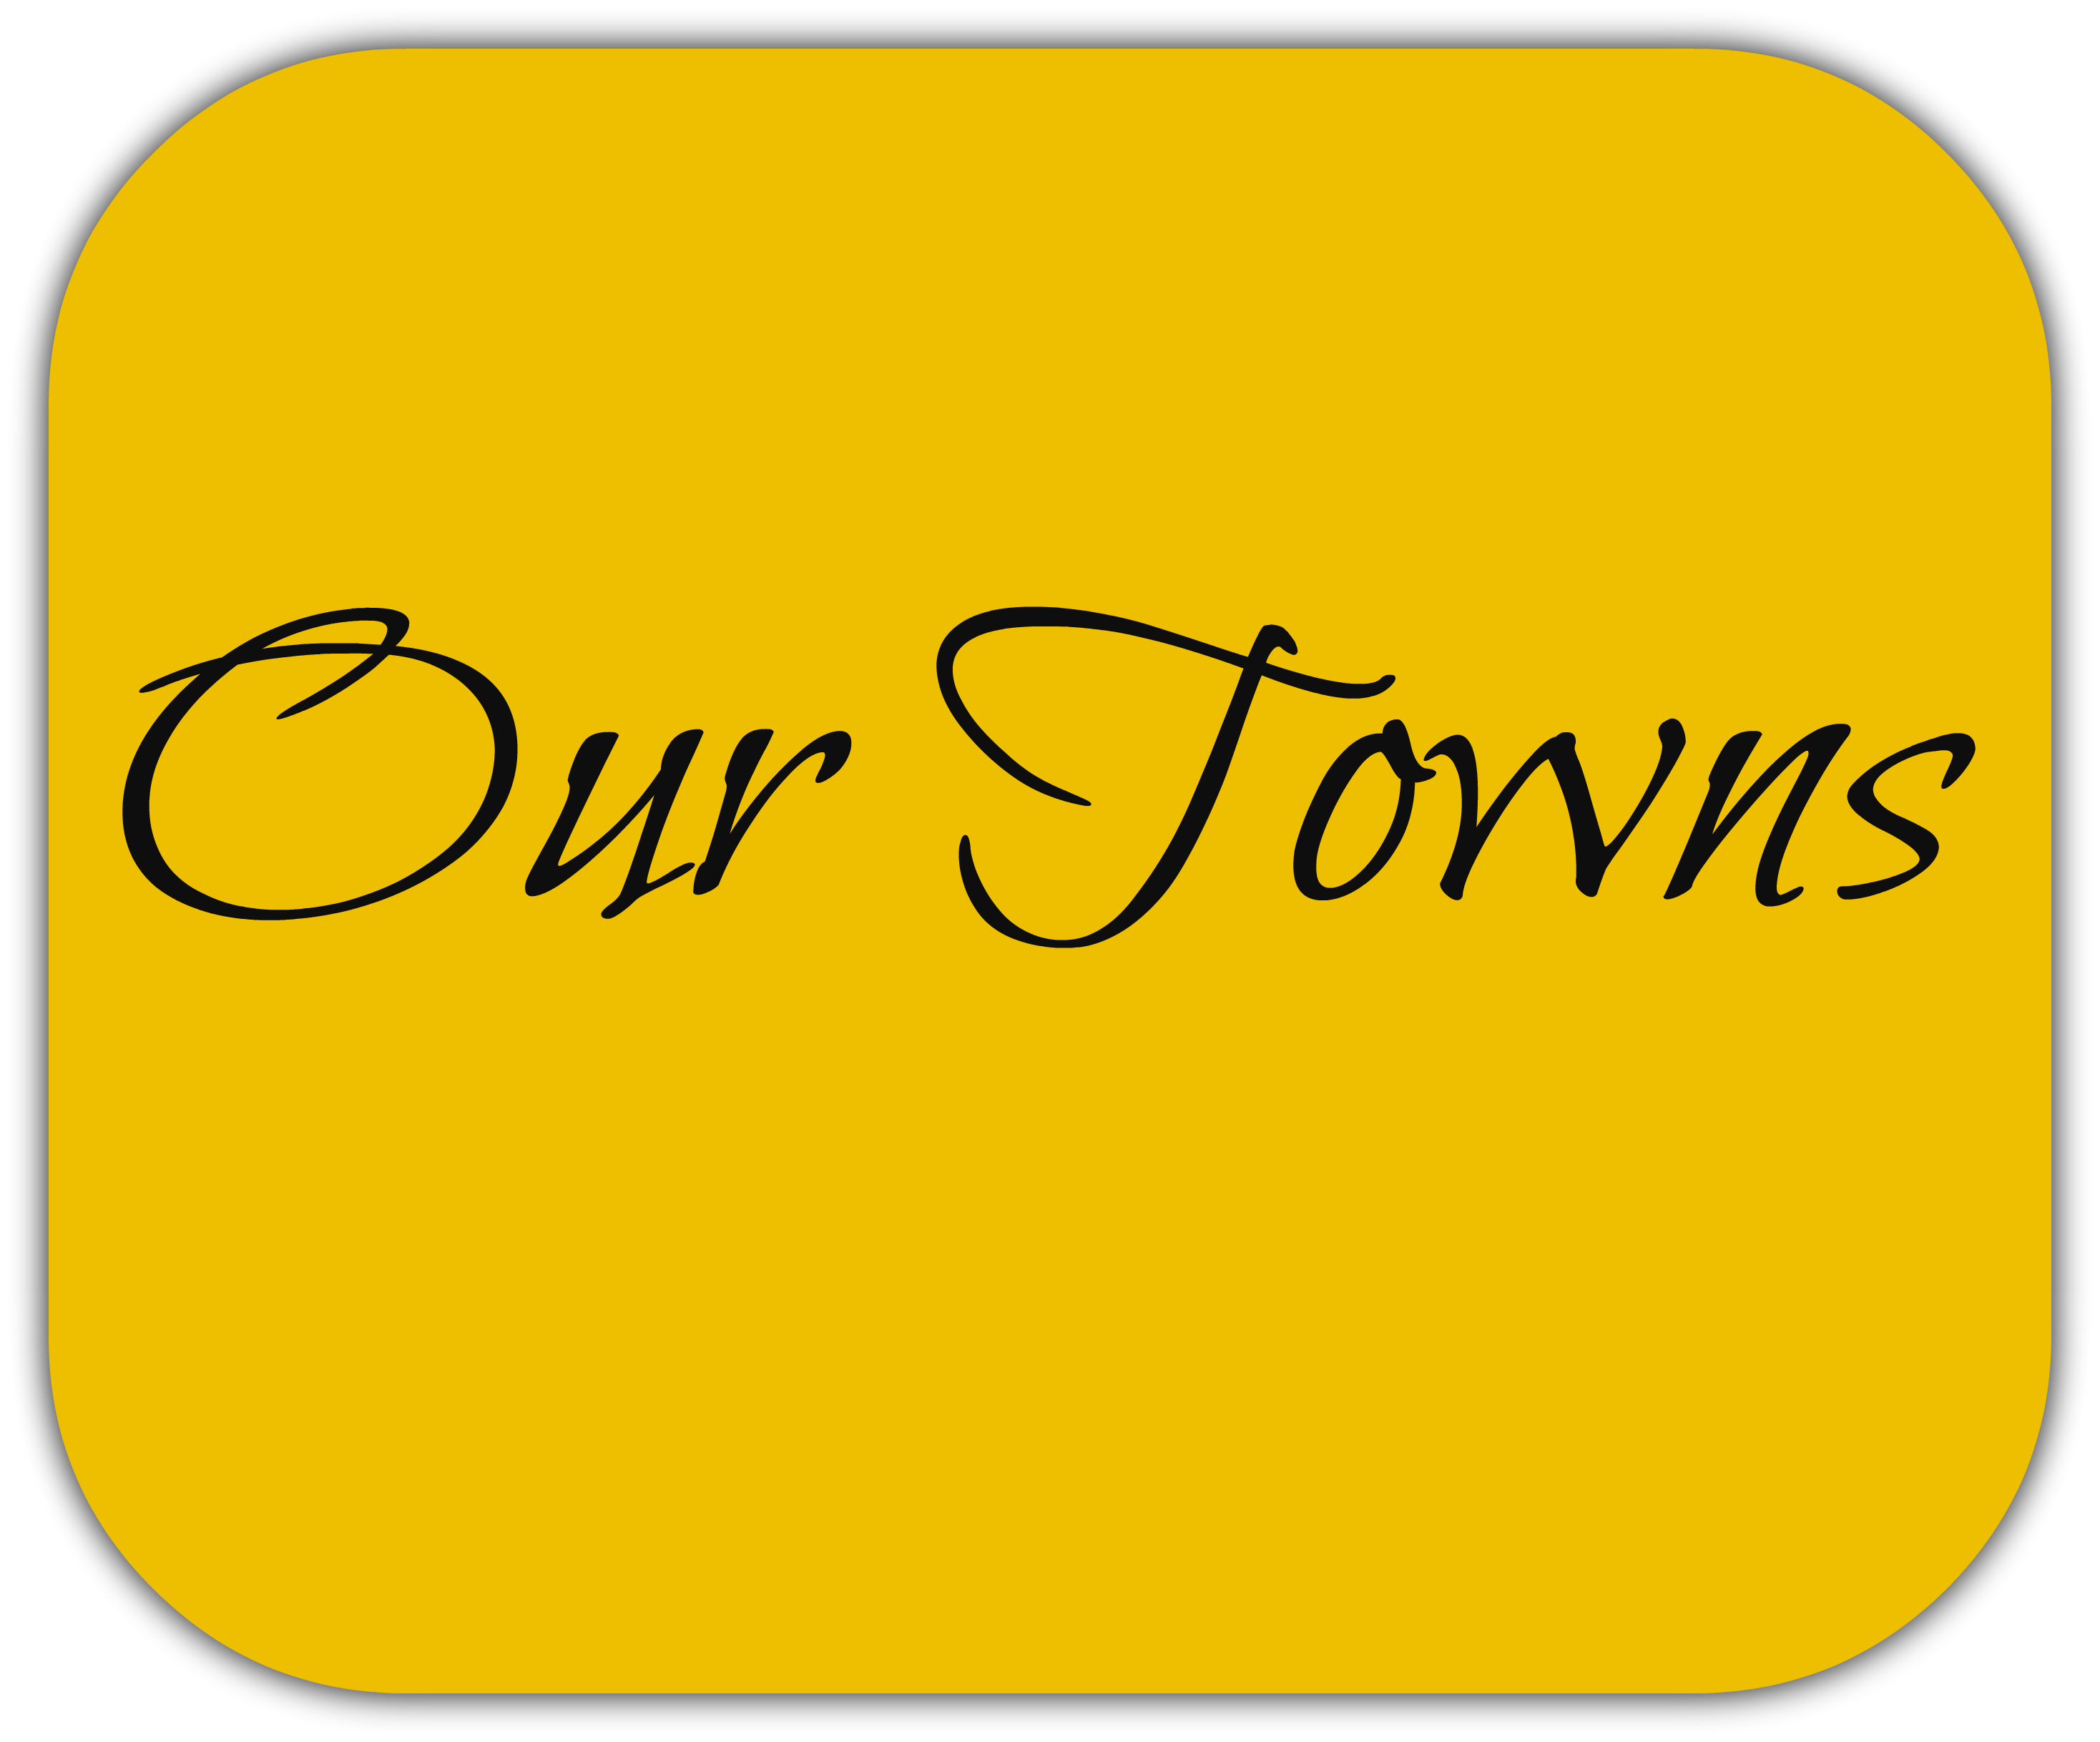 Our Pocono Towns